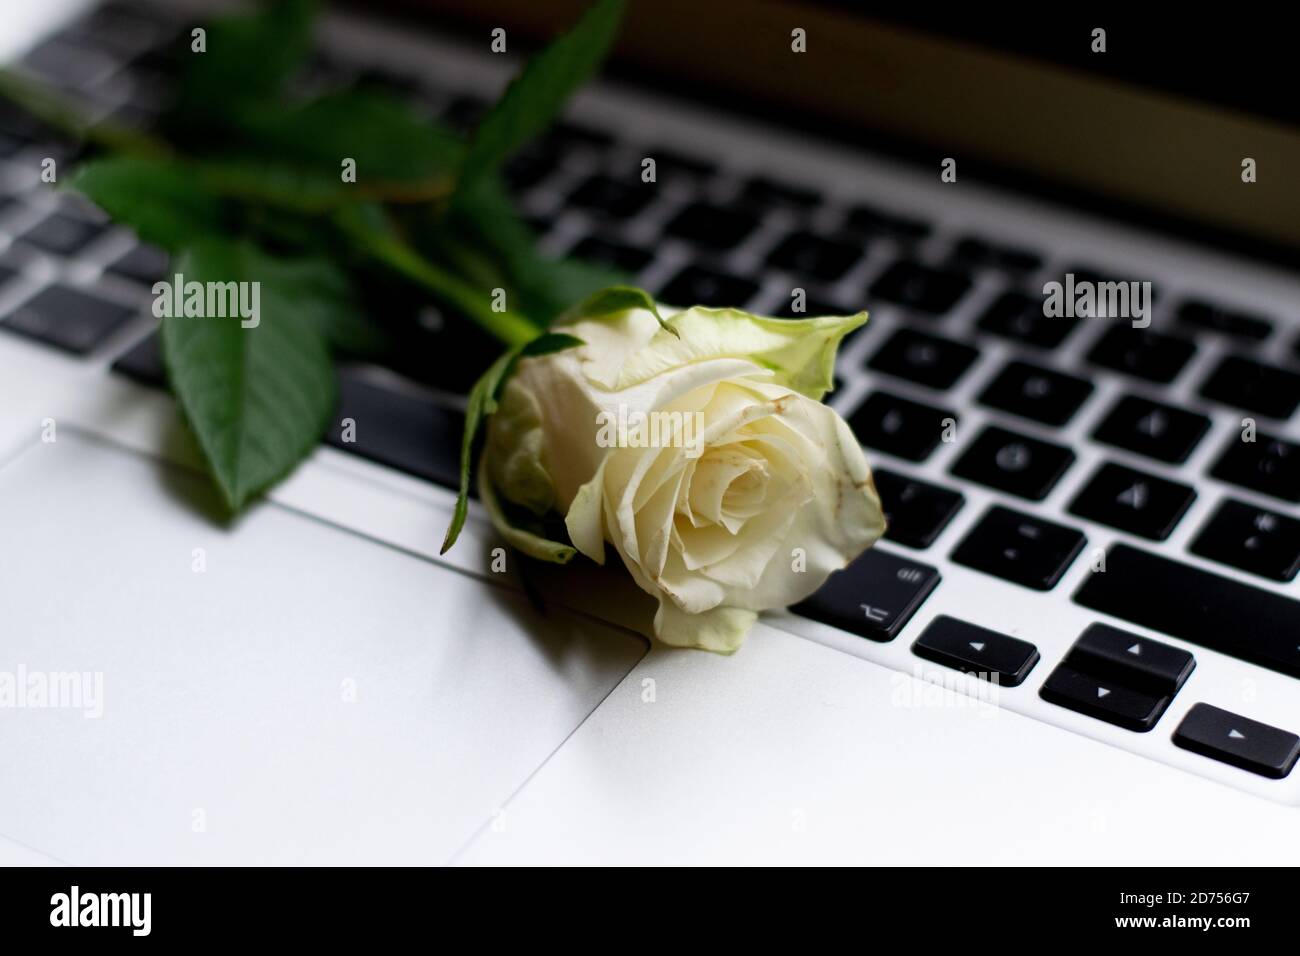 Rose jaune sur le clavier de l'ordinateur portable. Concept de rencontres en ligne, romance de bureau ou relation longue distance Banque D'Images